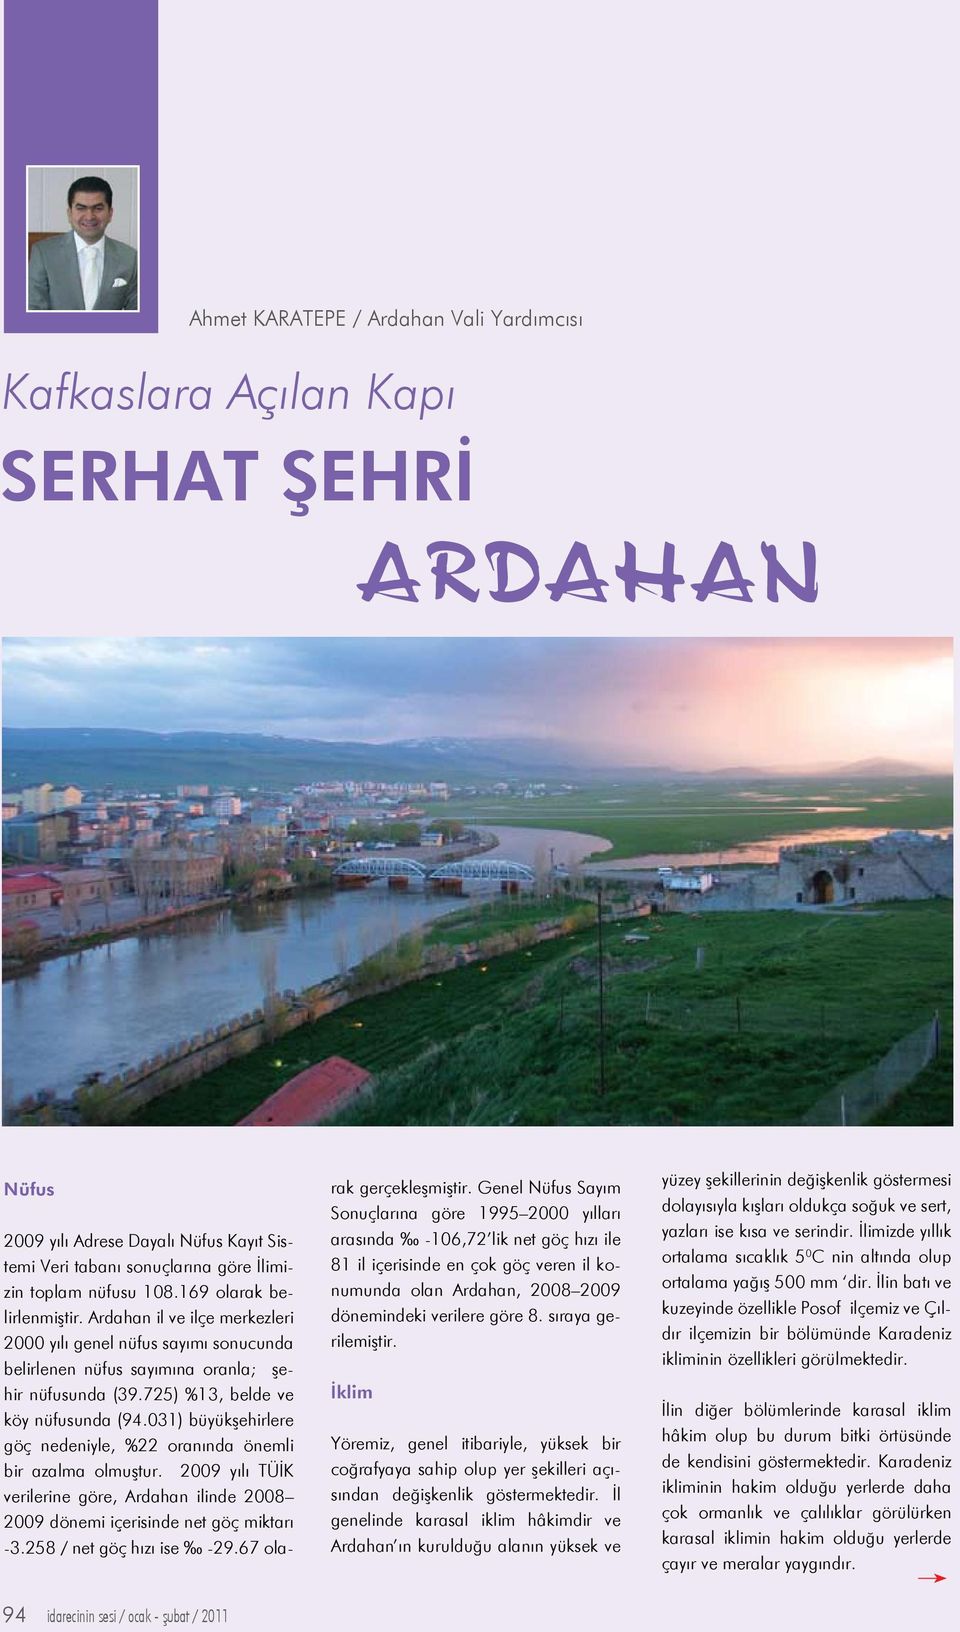 031) büyükşehirlere göç nedeniyle, %22 oranında önemli bir azalma olmuştur. 2009 yılı TÜİK verilerine göre, Ardahan ilinde 2008 2009 dönemi içerisinde net göç miktarı -3.258 / net göç hızı ise -29.